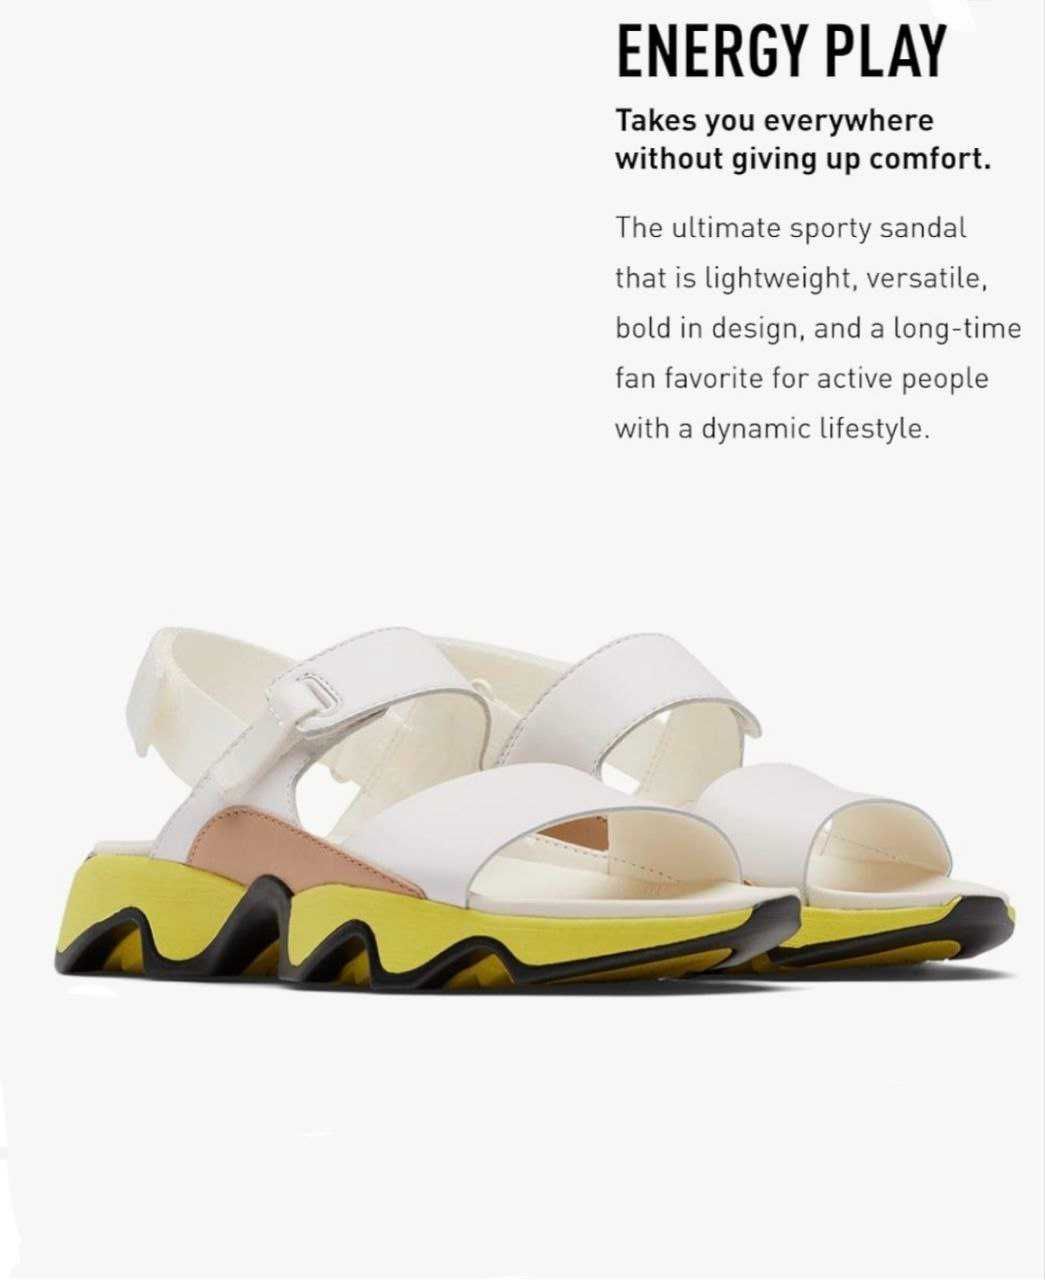 Sorel Kinetic Sandal жіночі босоніжки 38, 38.5, 39 р